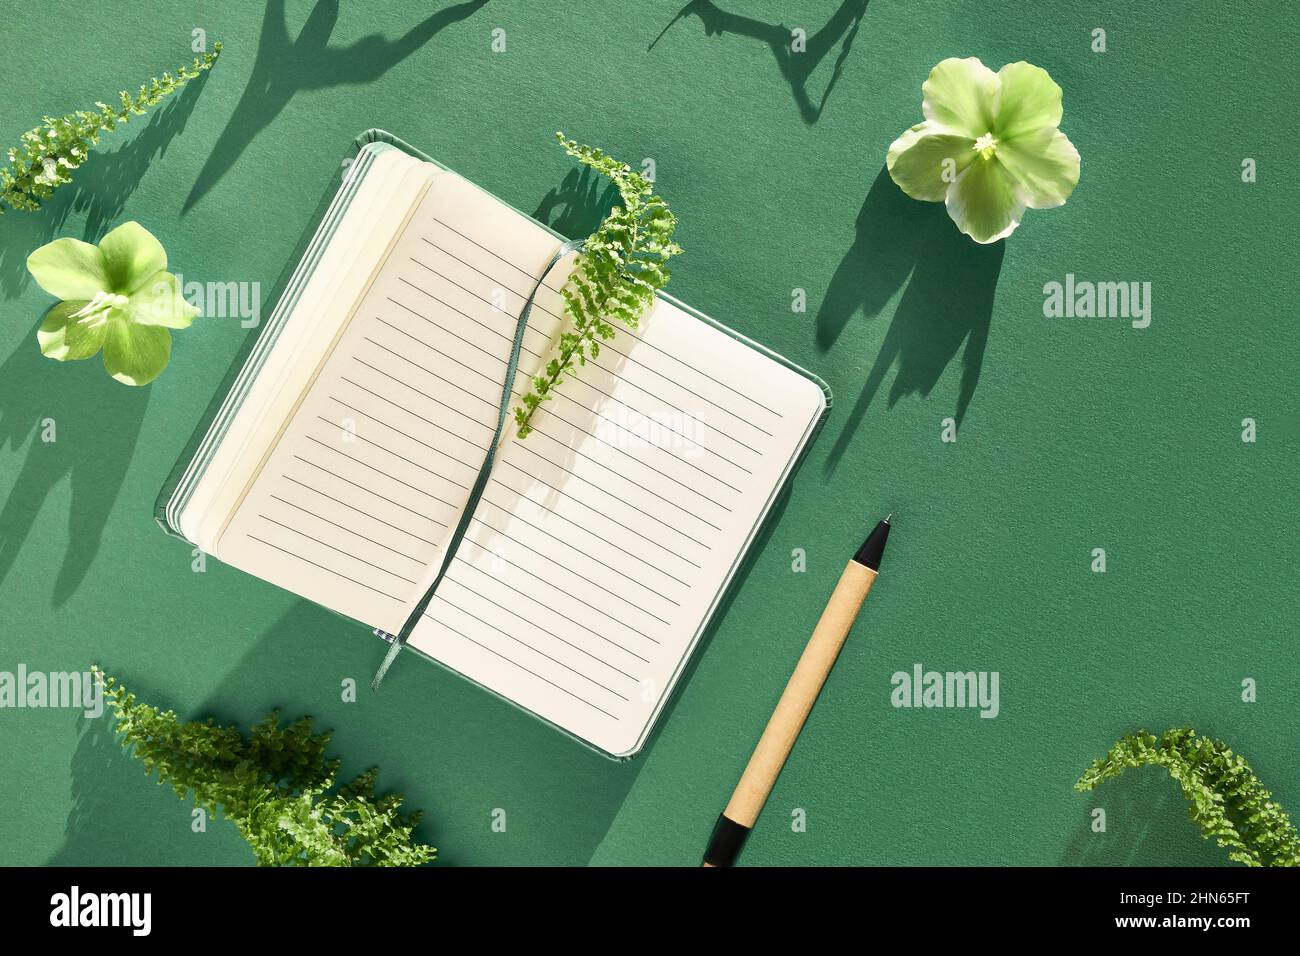 Cuaderno, plantas verdes y flores entre las páginas. Hojas de helecho, flores de Helleboro blanco verde. Foto de stock